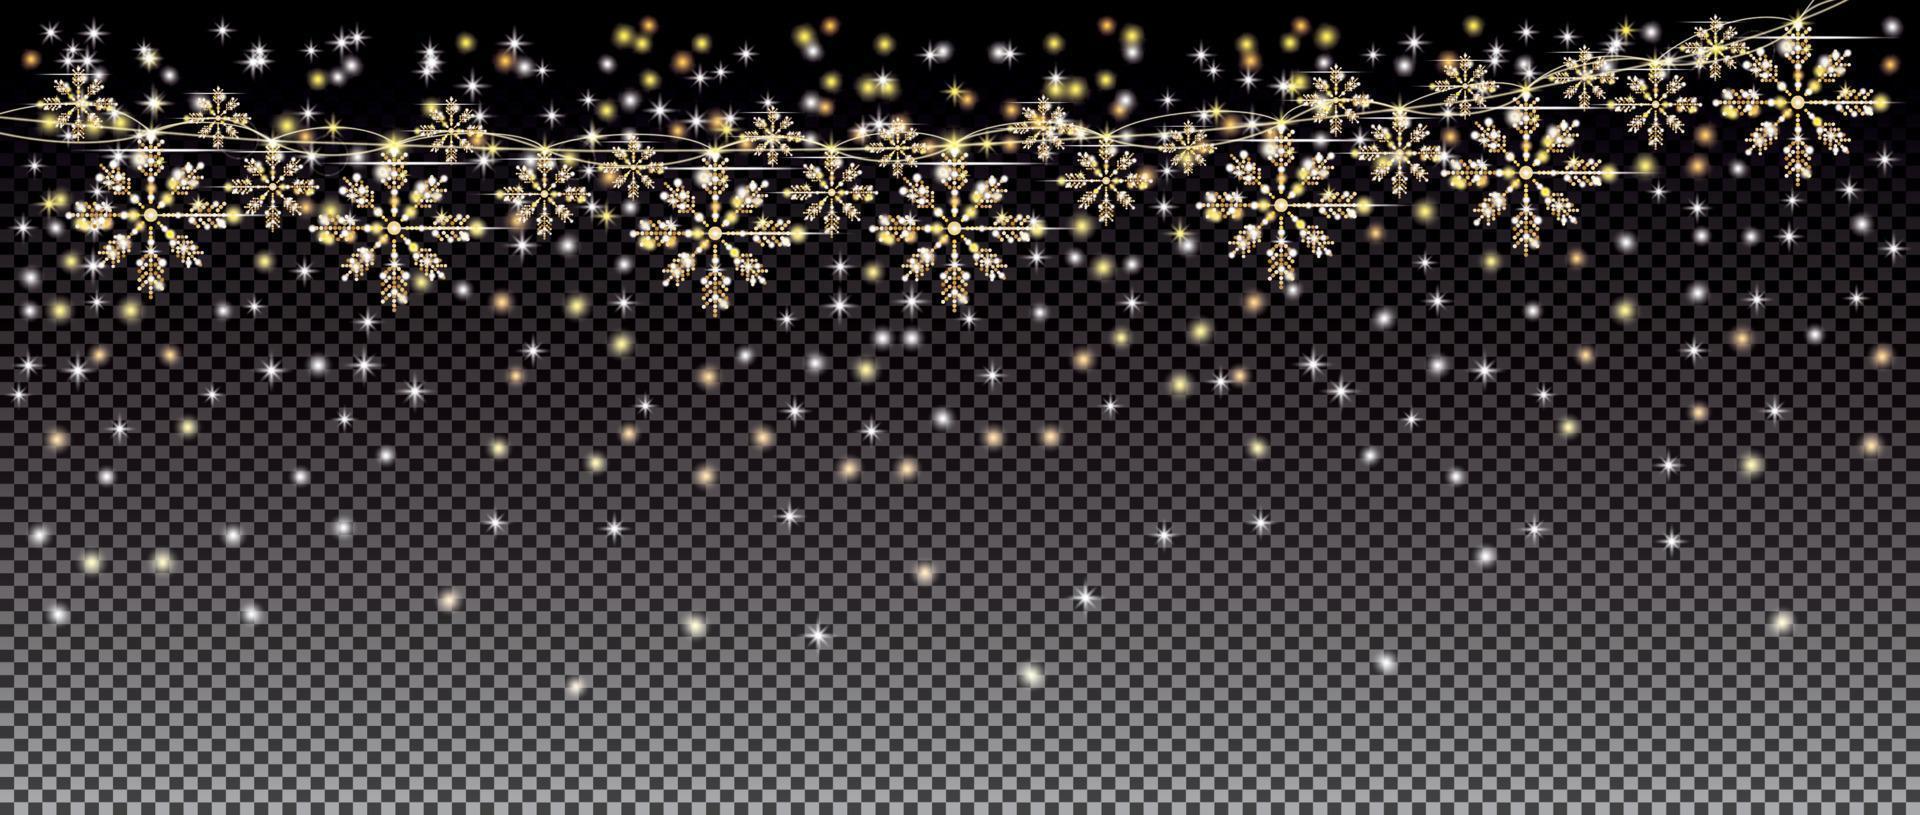 Neonlichter und goldene Girlande mit Schneeflocken auf transparentem Gitterhintergrund. vektor